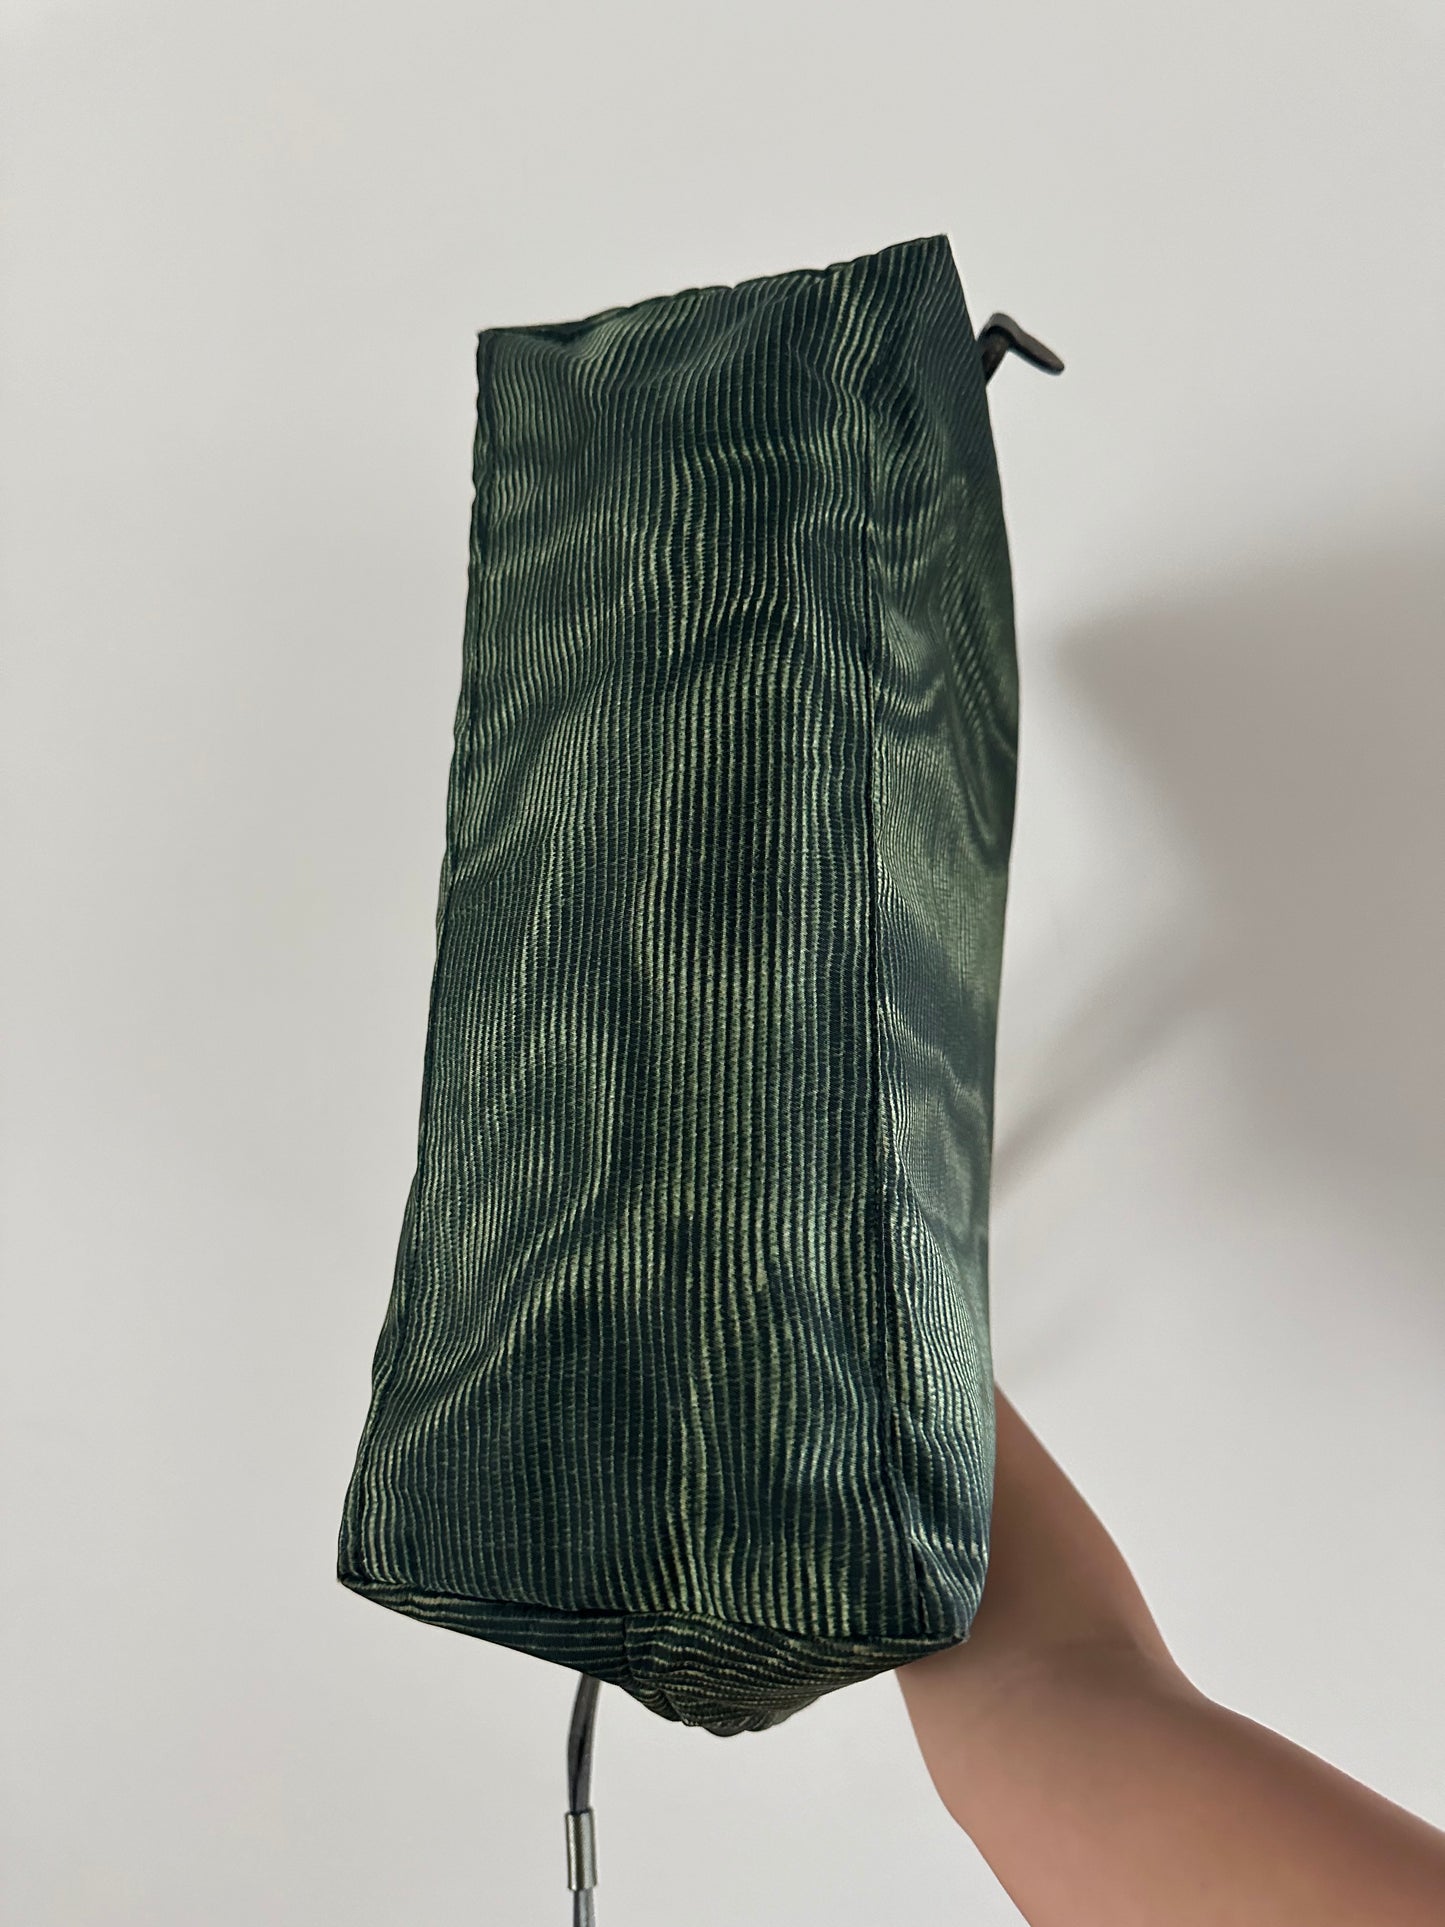 RARE Prada Green Ripple Pattern Shoulder Tote Bag